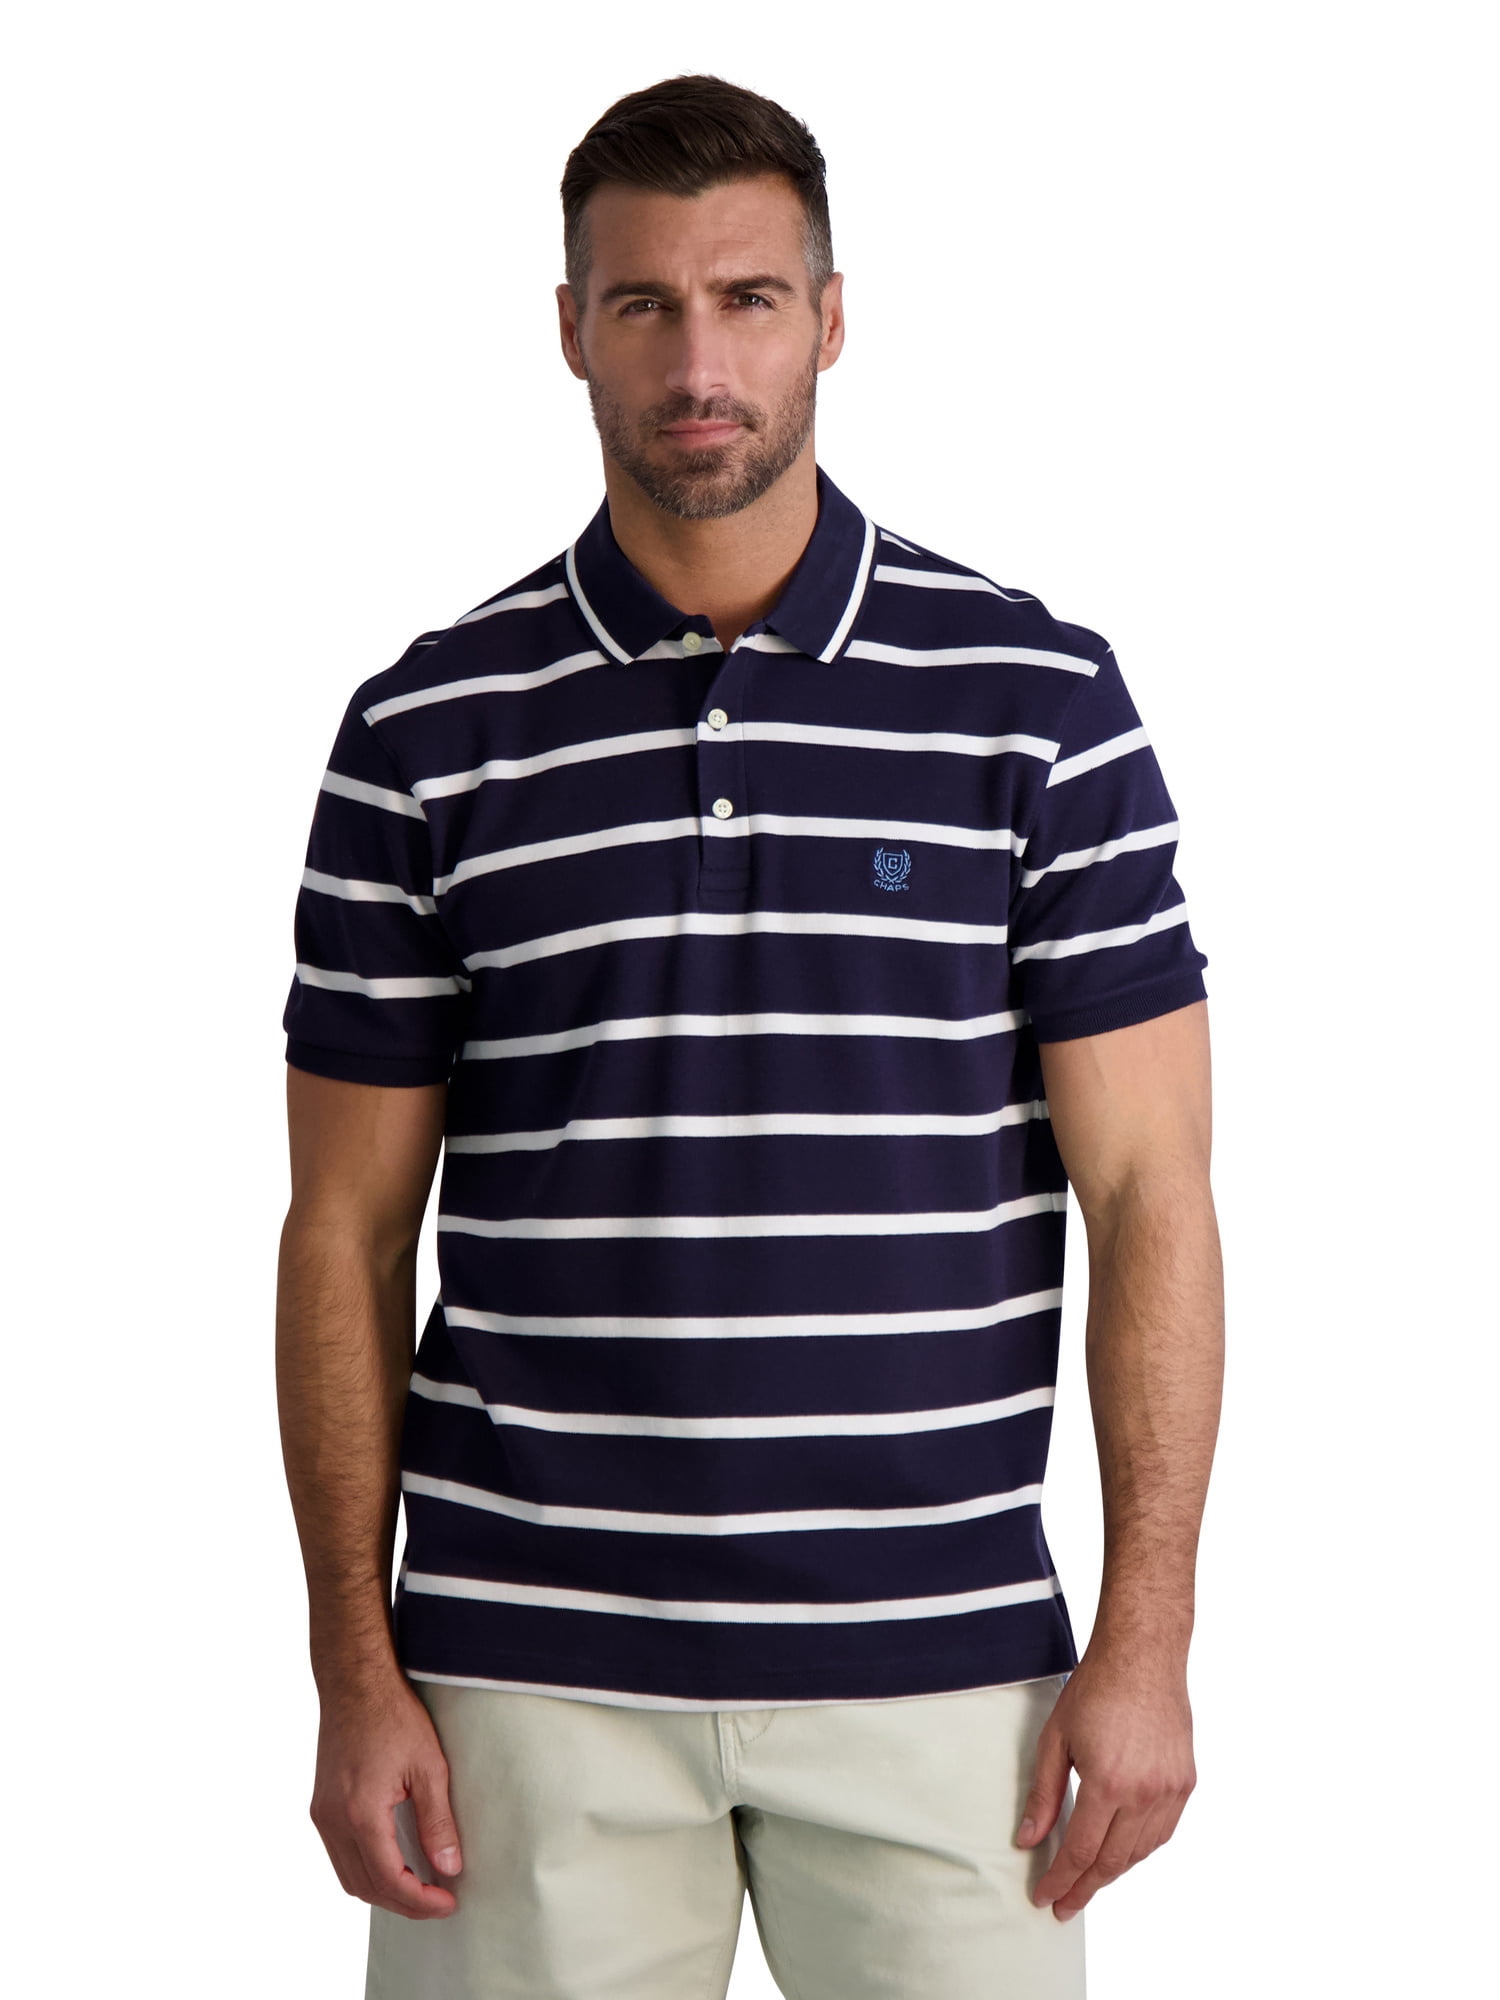 Chaps Men's Cotton Polo Shirt, Navy Blue, X-Large